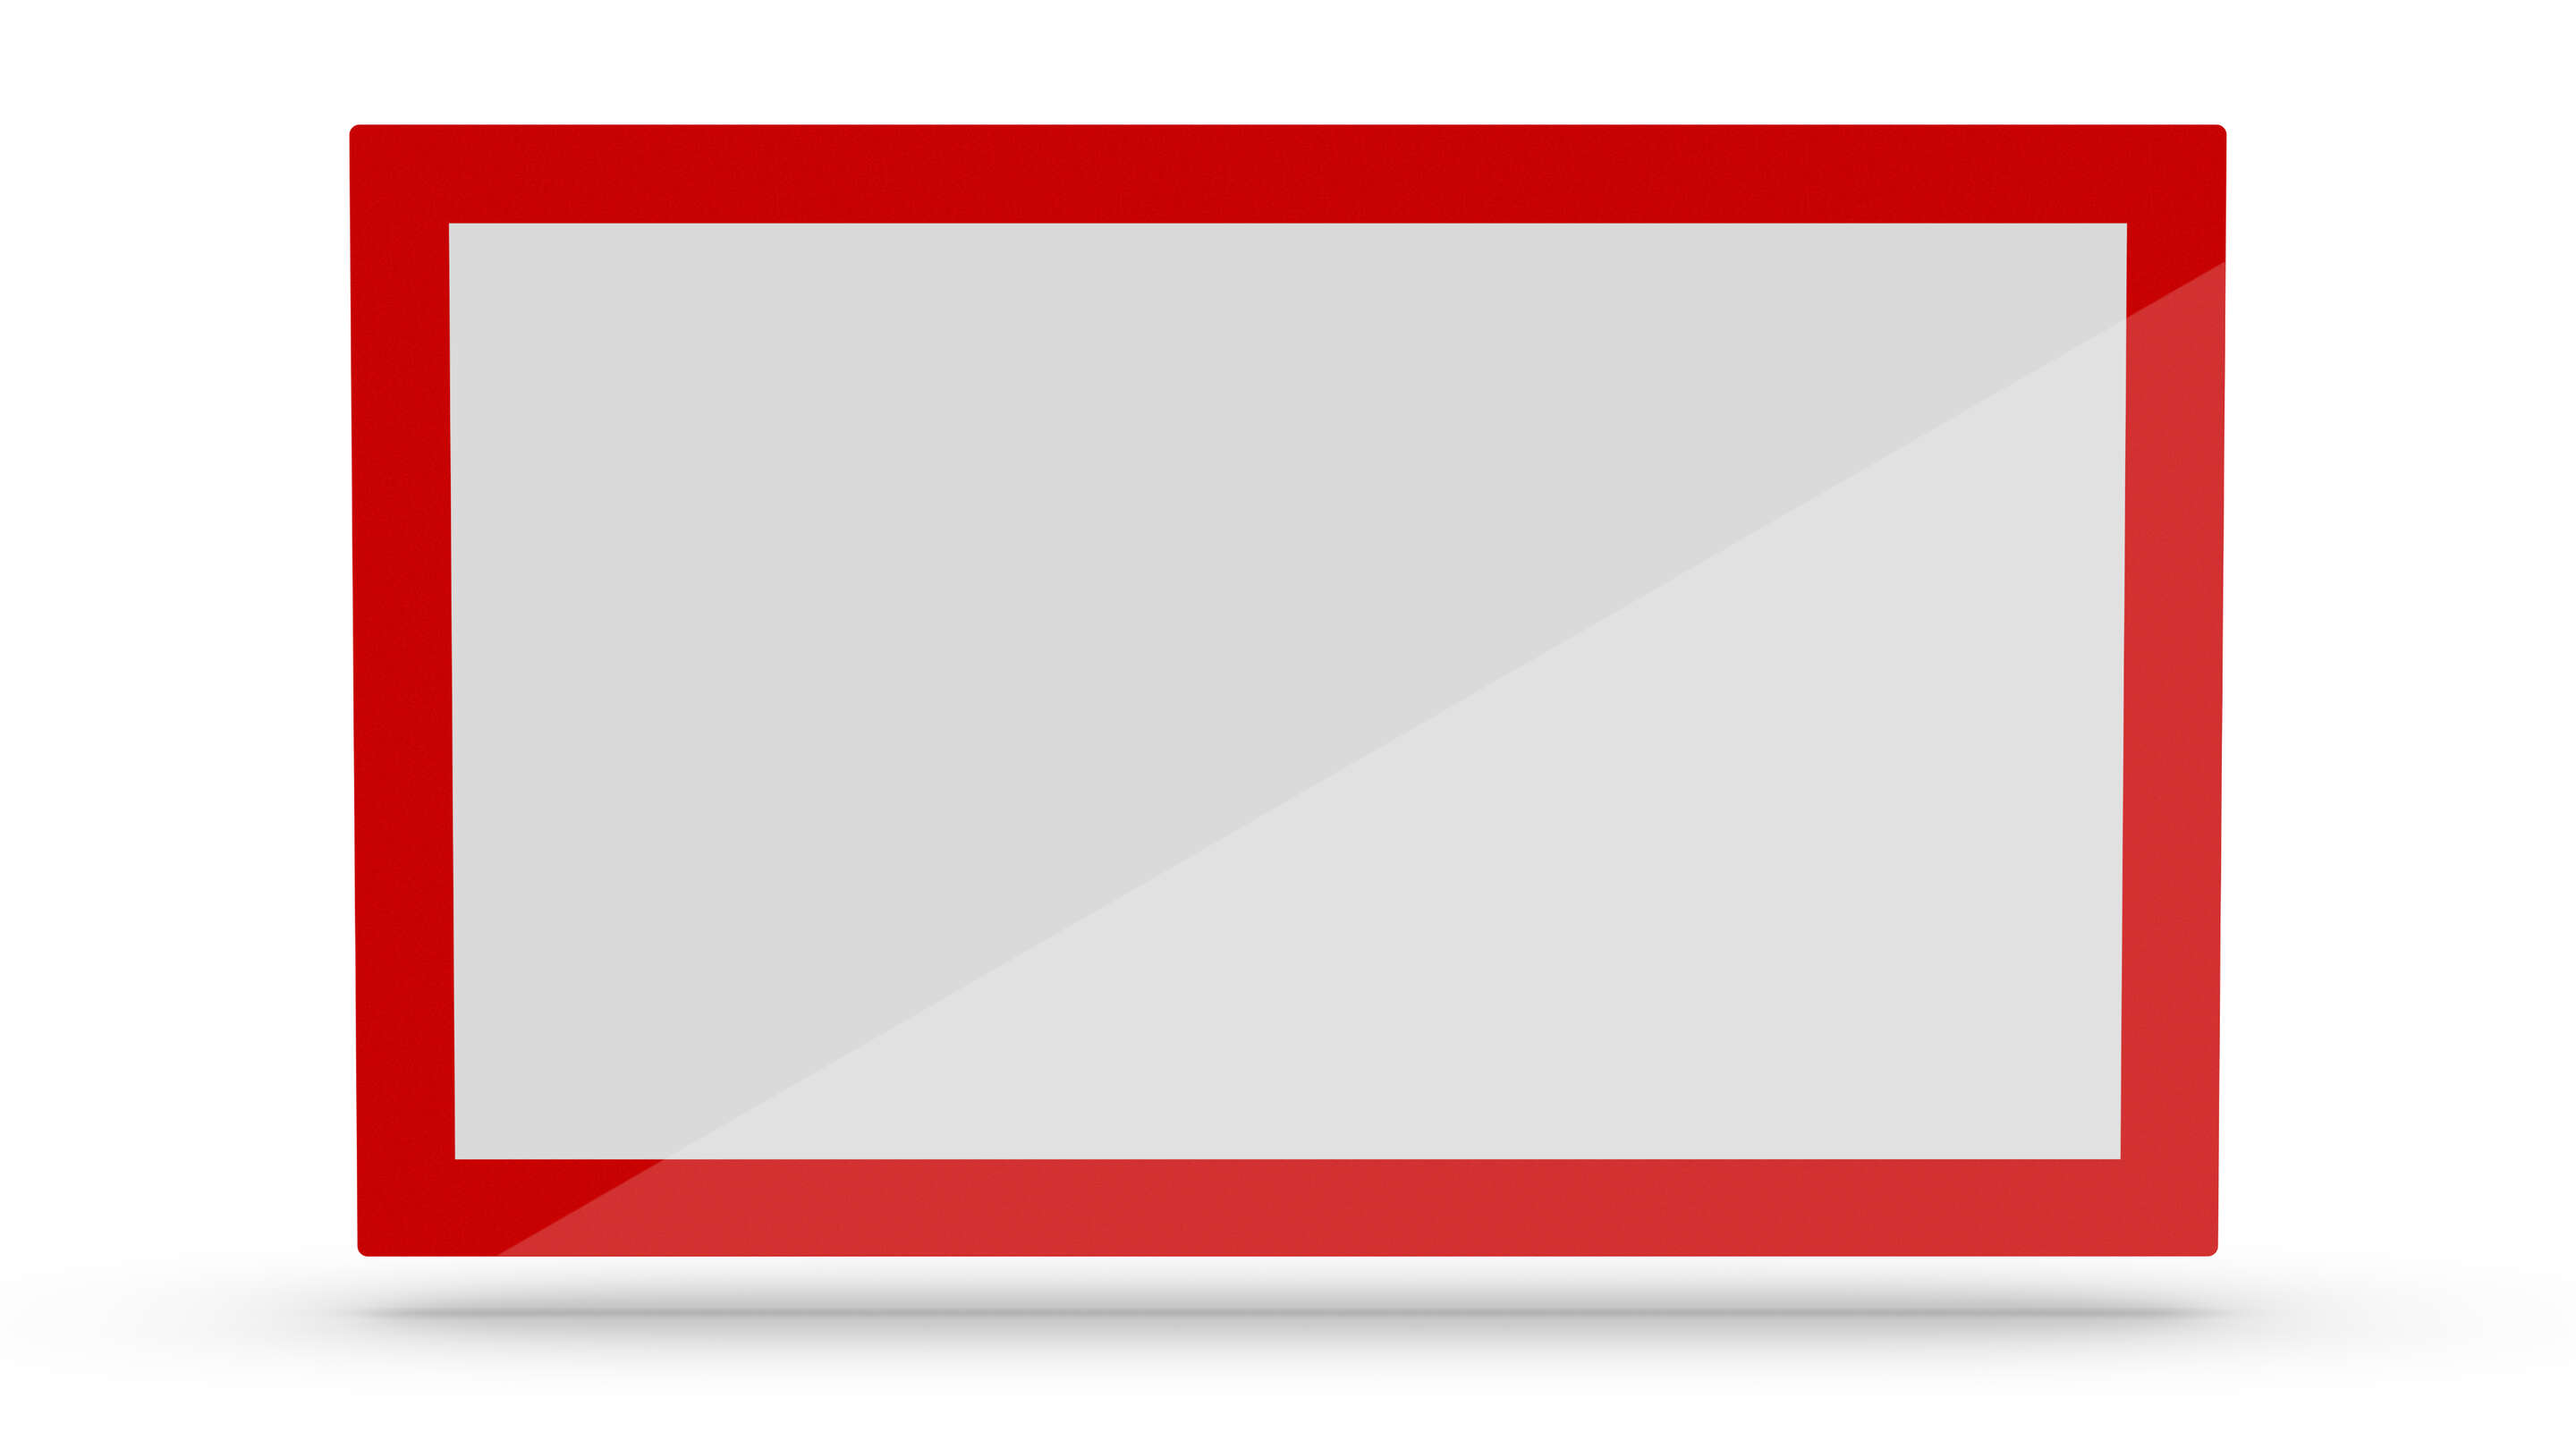 Érintőképernyő - Egyéni érintőképernyő piros-fehér téglalap alakú jel